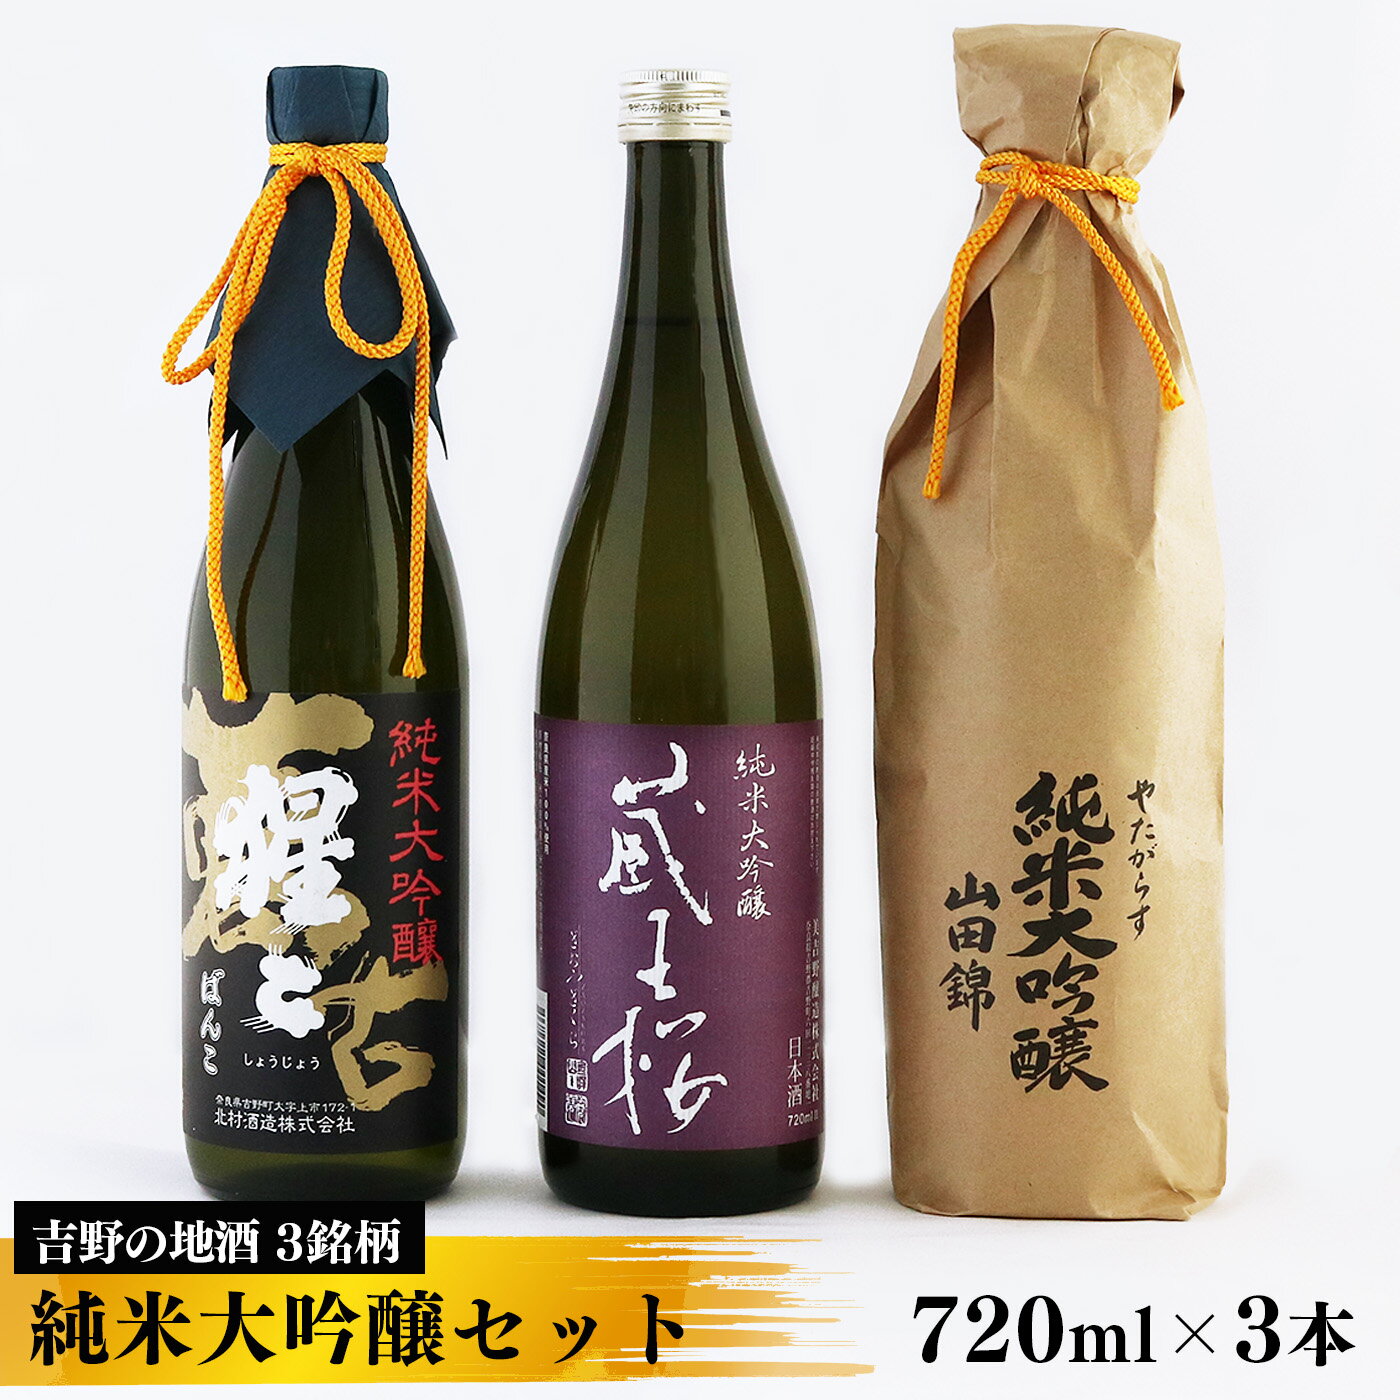 吉野の地酒 3銘柄 純米大吟醸セット720ml×各1本